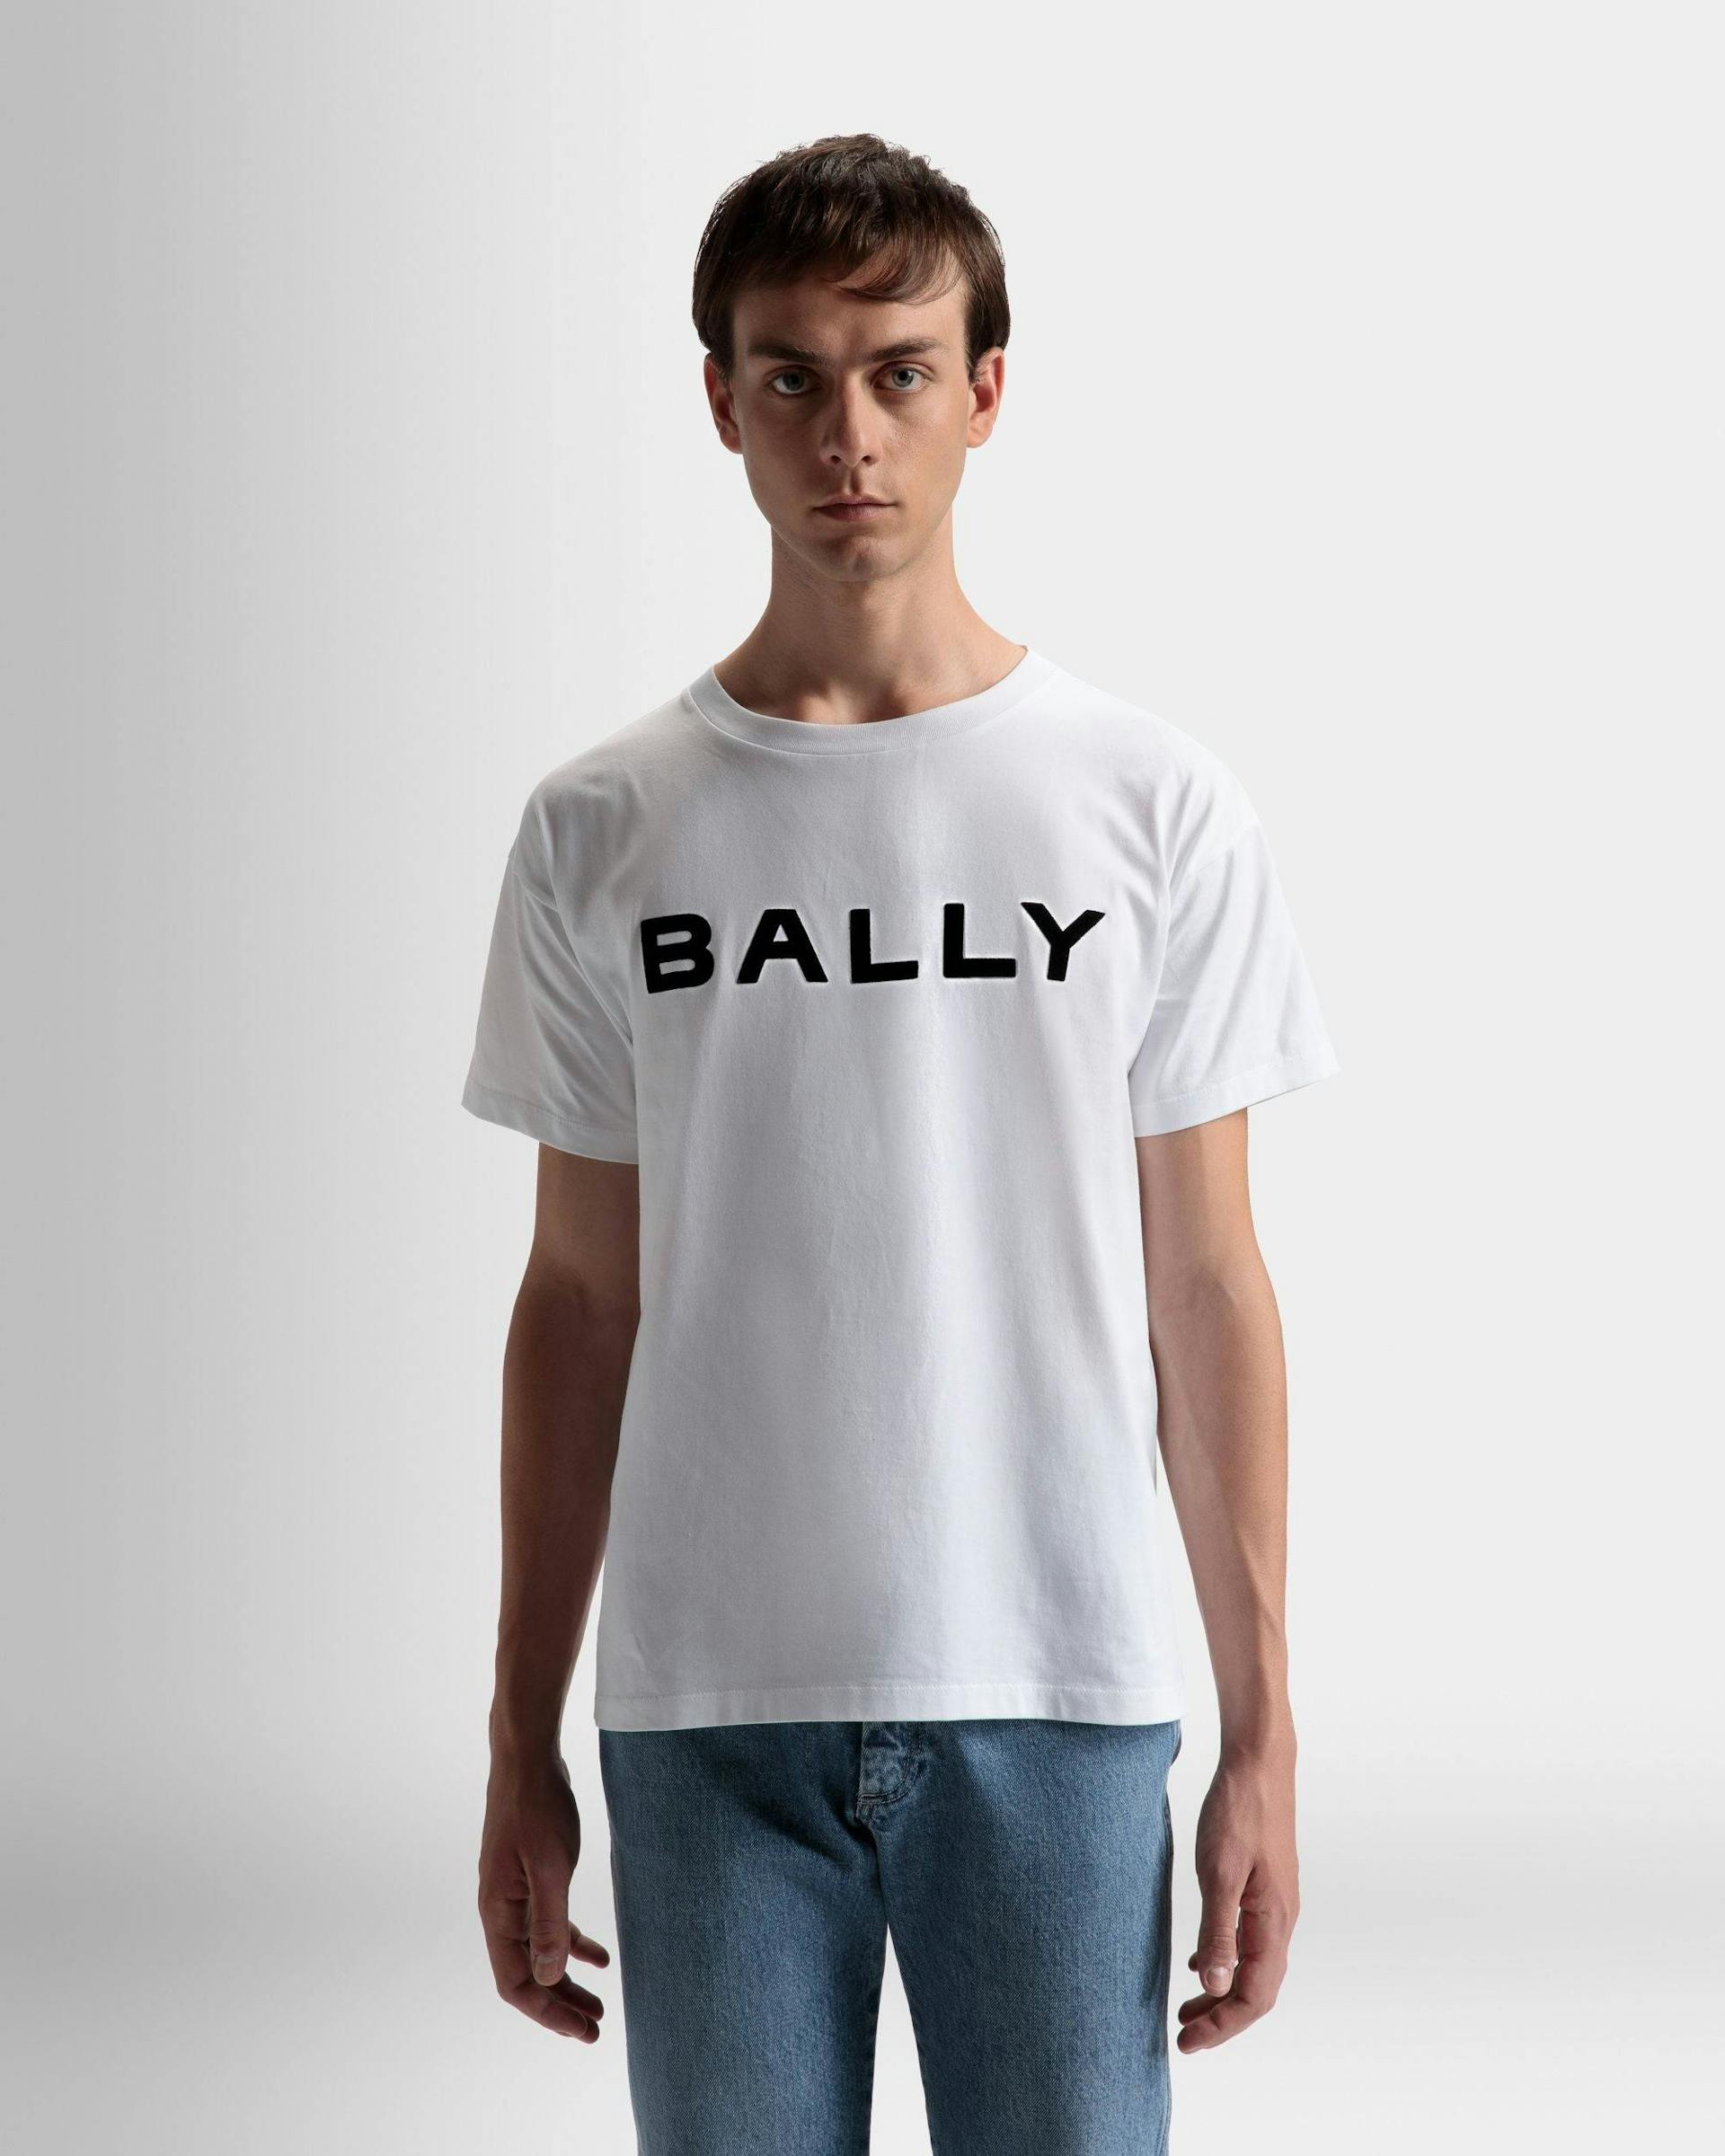 ロゴ Tシャツ ホワイト コットン - 男性 - Bally - 03